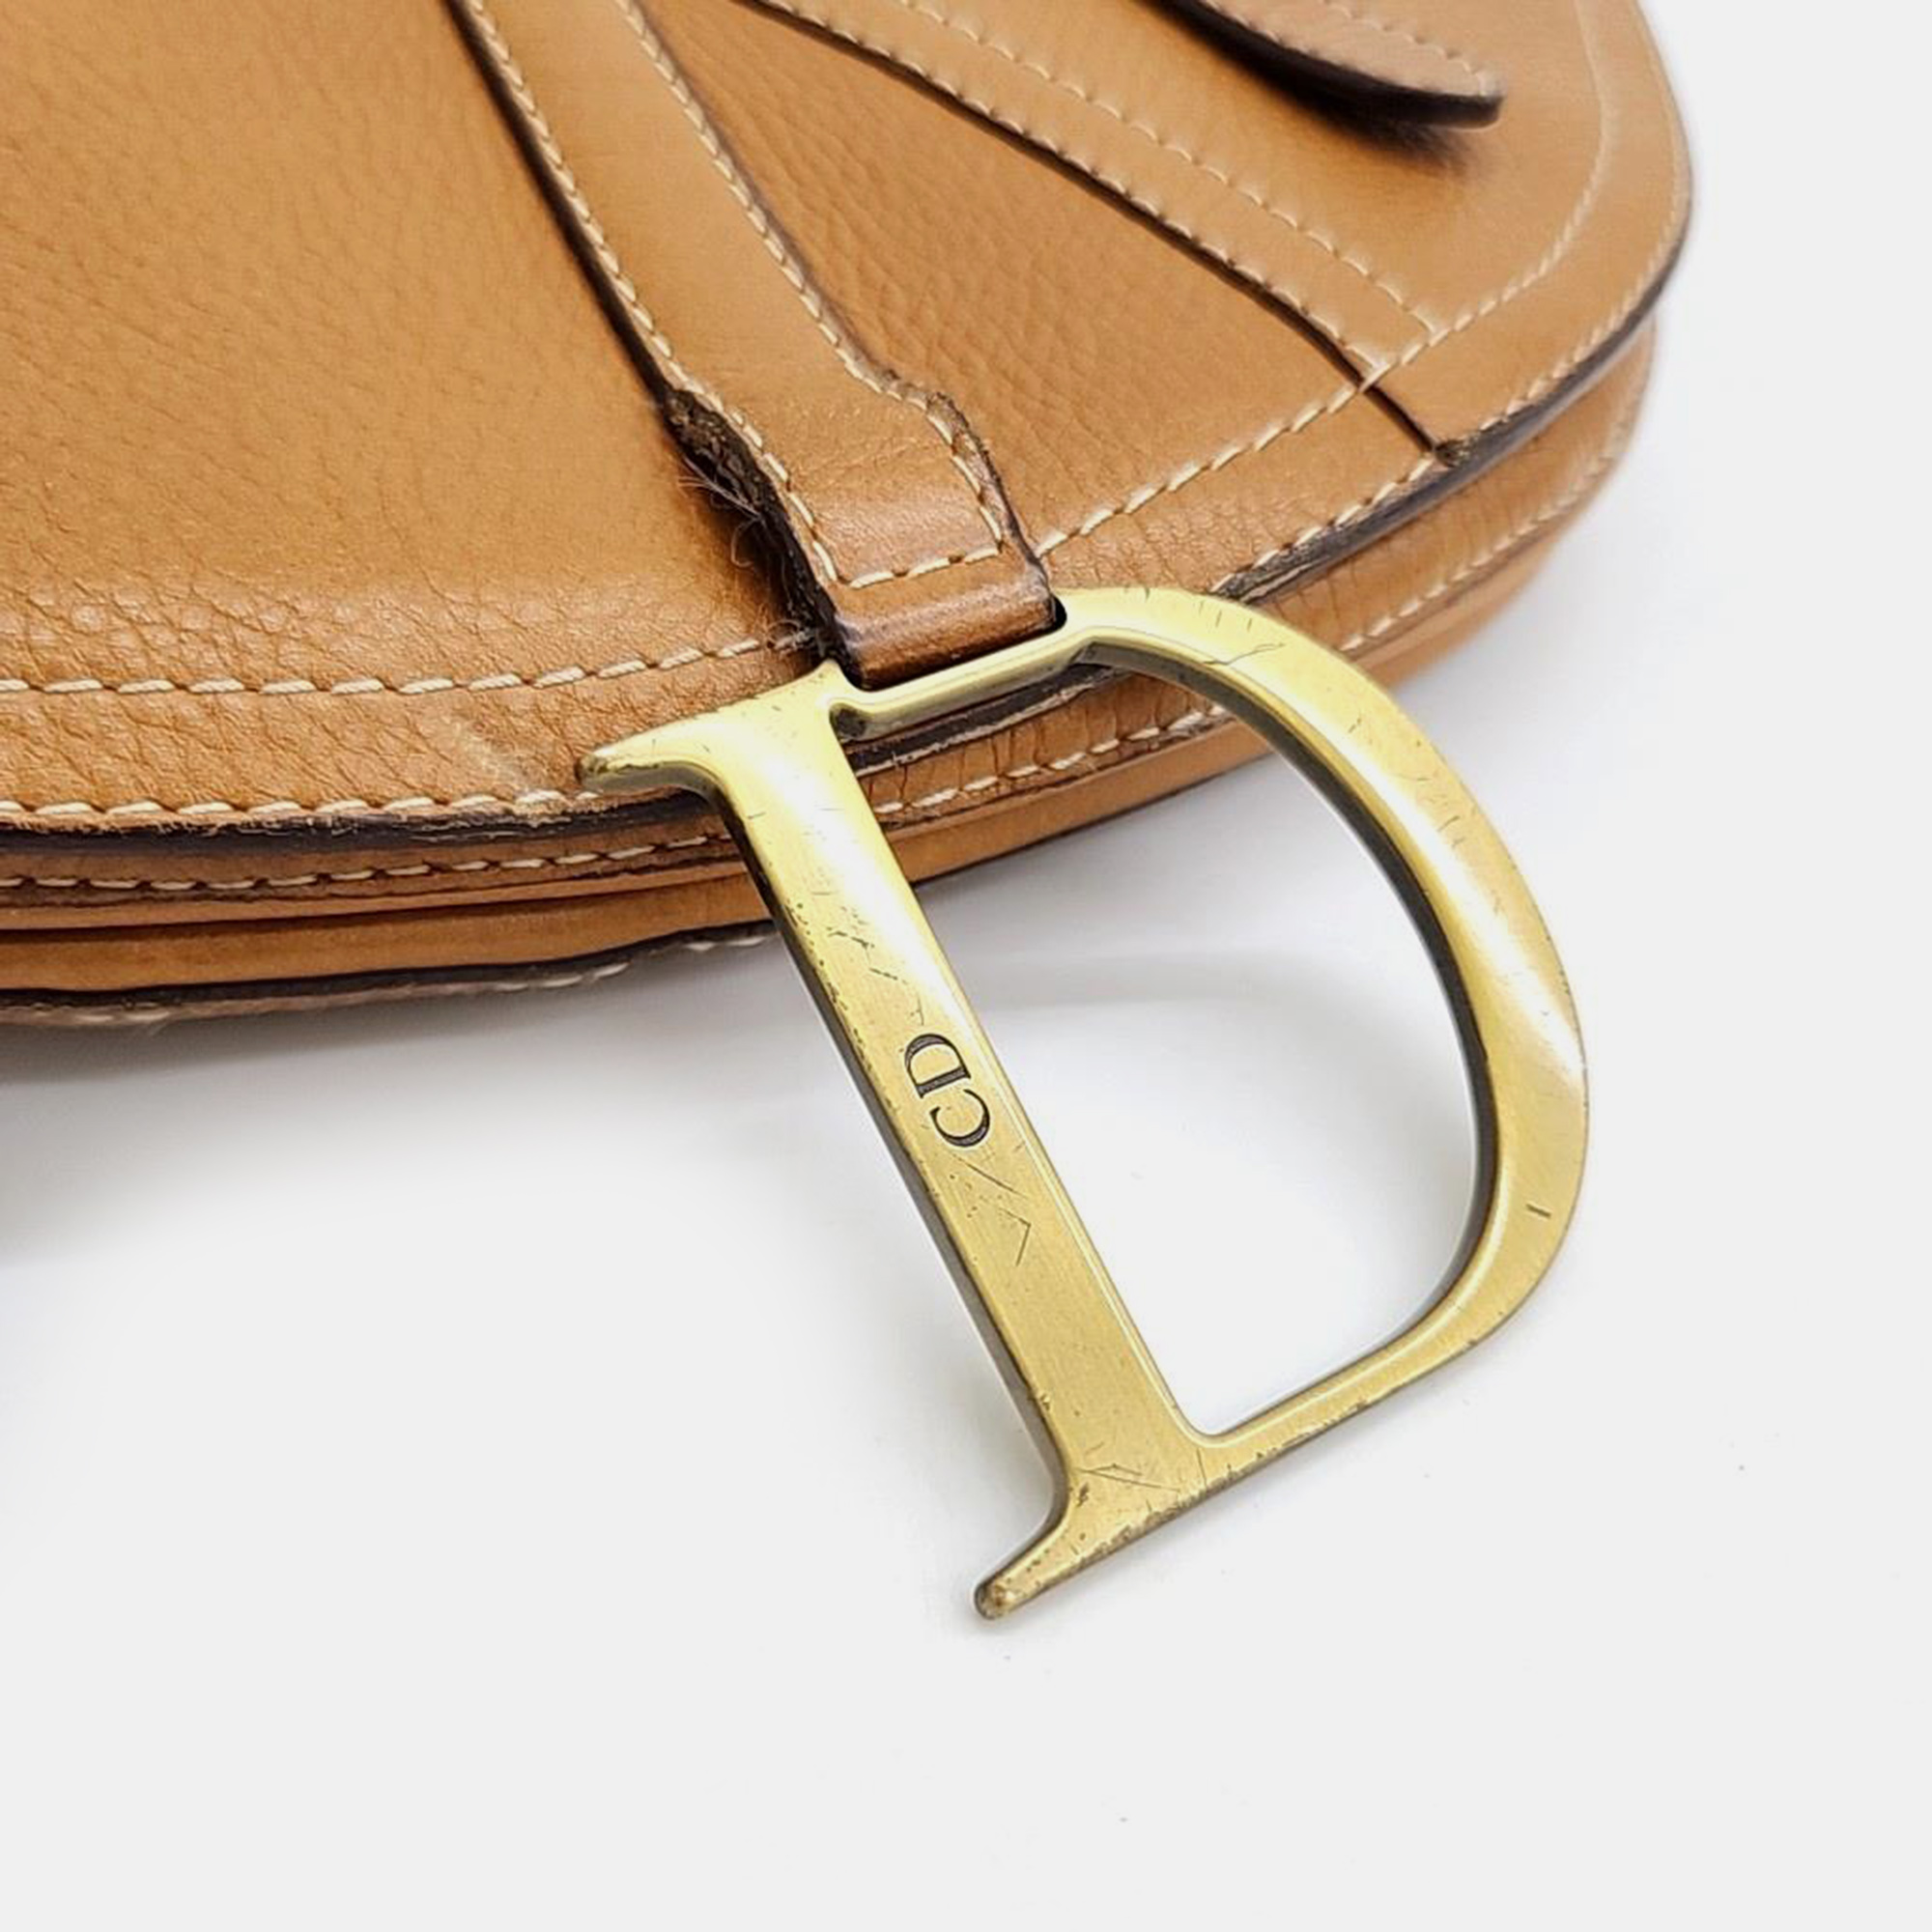 Christian Dior Saddle Cross Bag